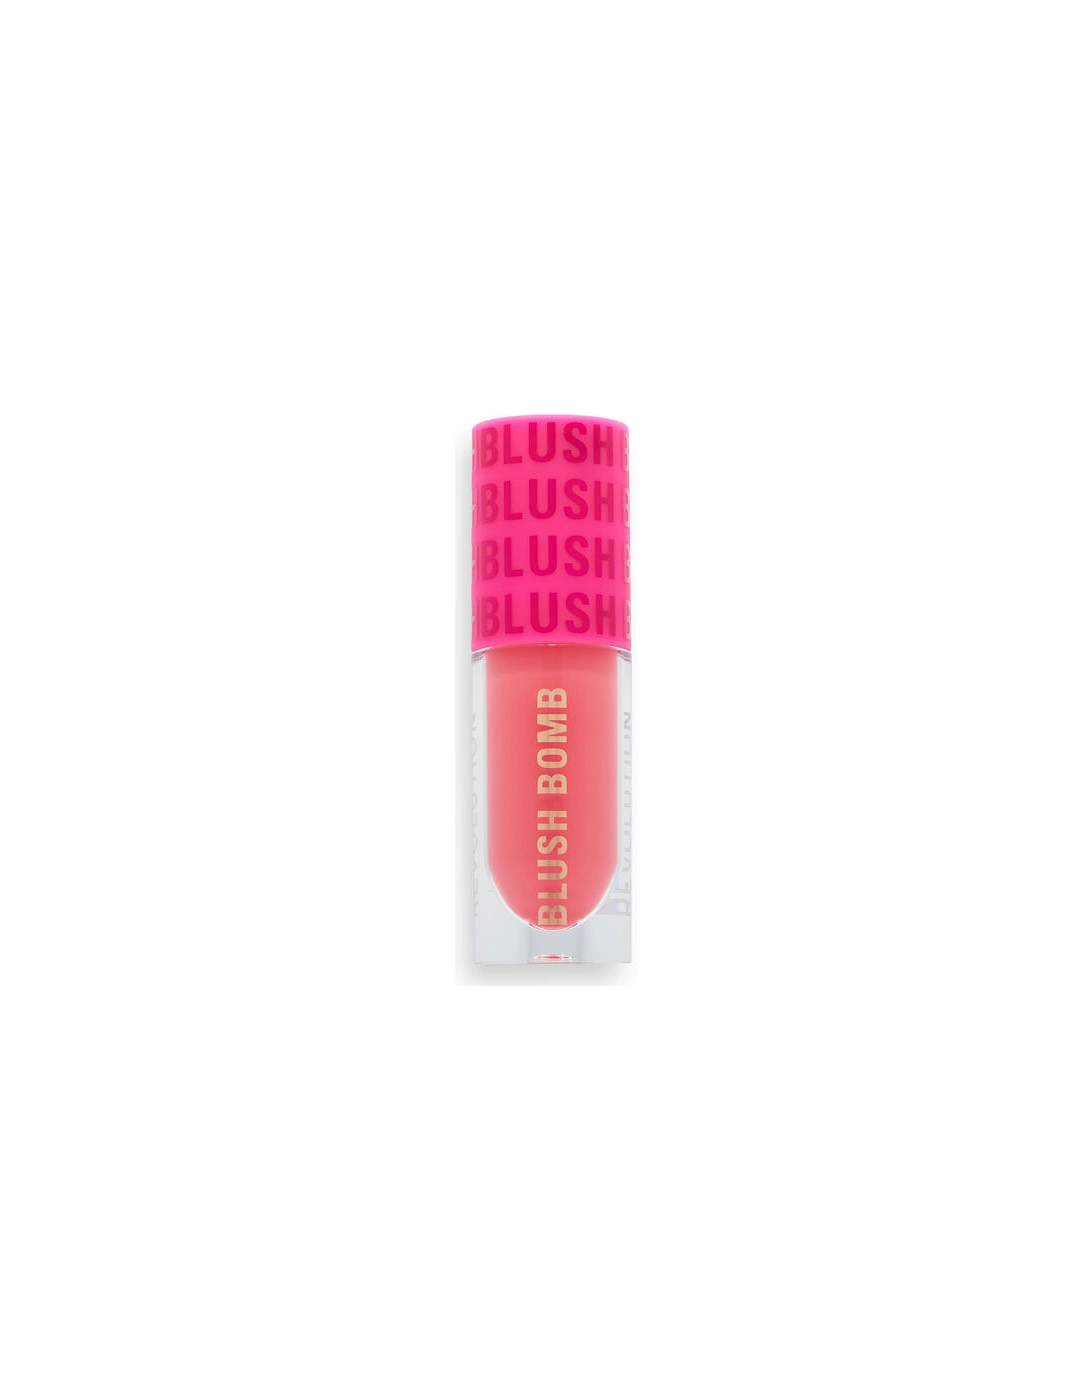 Makeup Blush Bomb Cream Blusher Savage Coral, 2 of 1